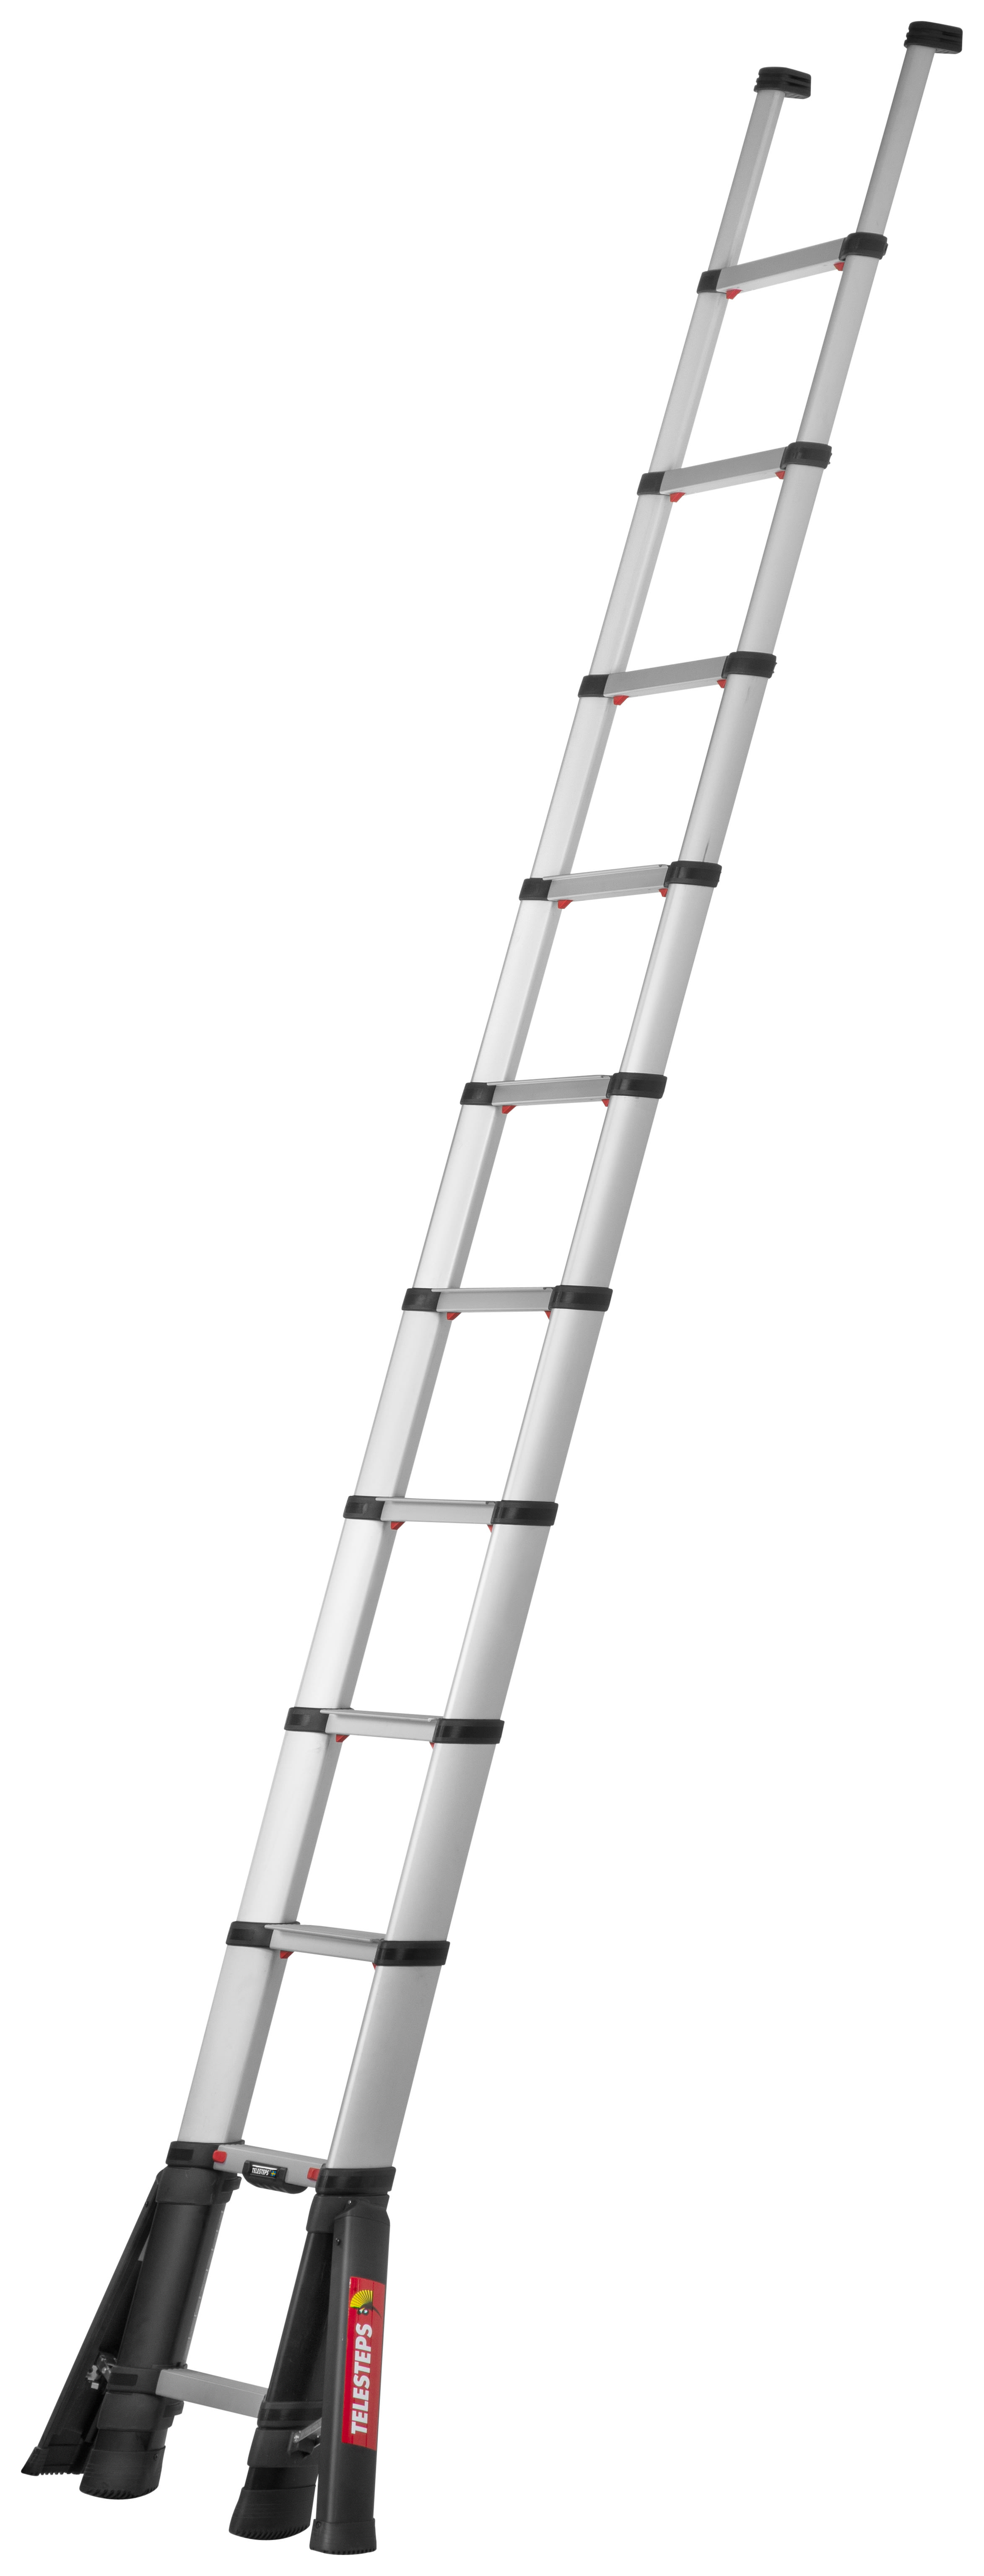 Telesteps Prime Line 3.5m Aluminium Telescopic Ladder with